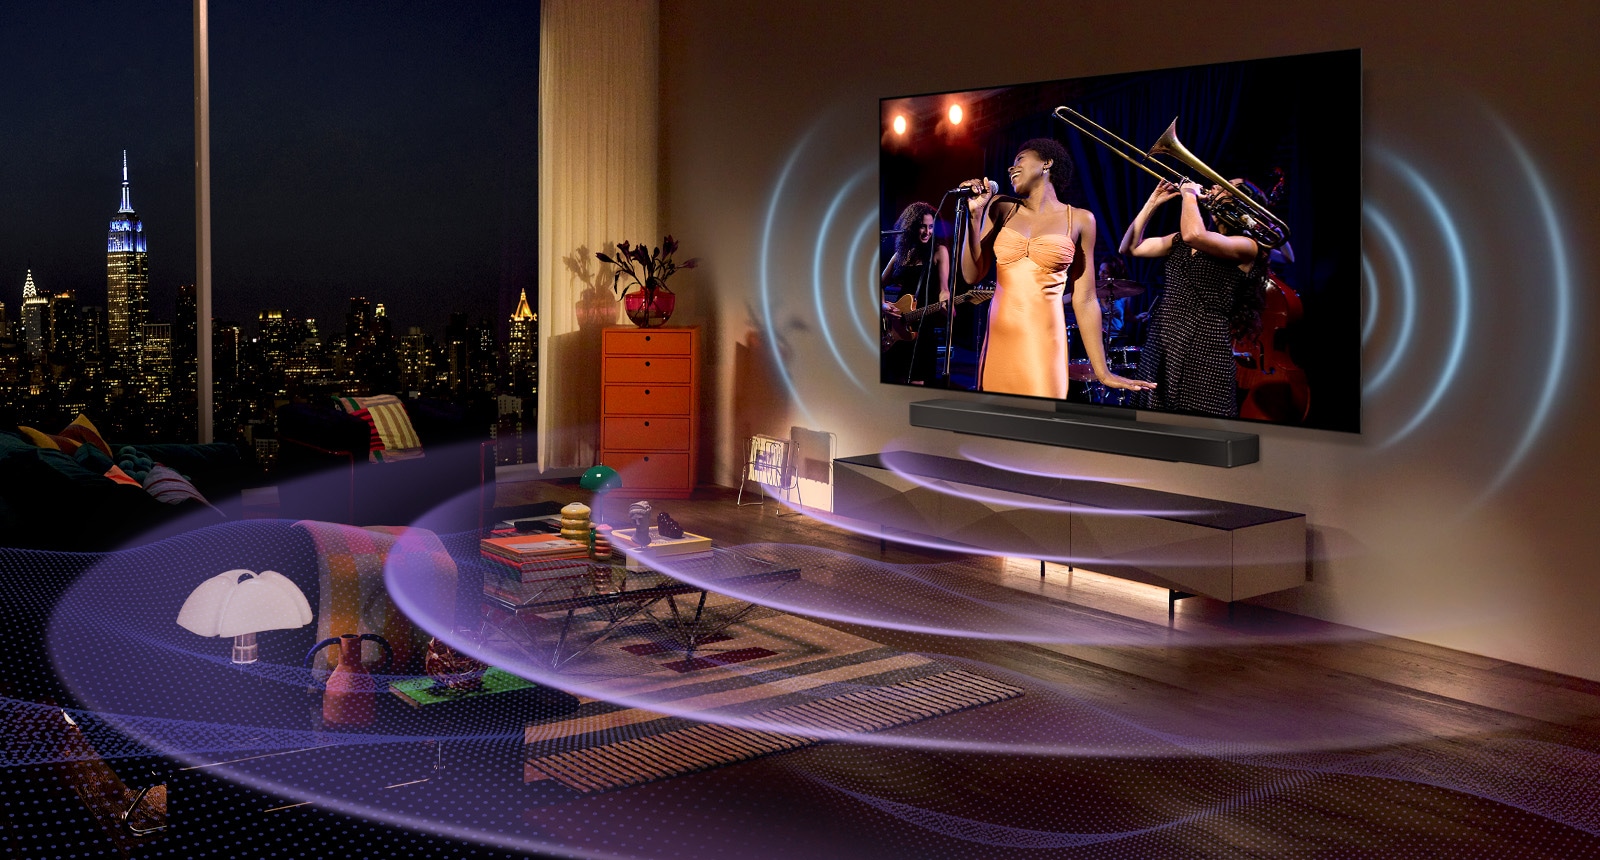 Obrázek místnosti s televizorem LG OLED s hudebním koncertem na obrazovce. Prostor vyplňují modré křivky znázorňující zvuk televizoru a fialové křivky znázorňující zvuk soundbaru.